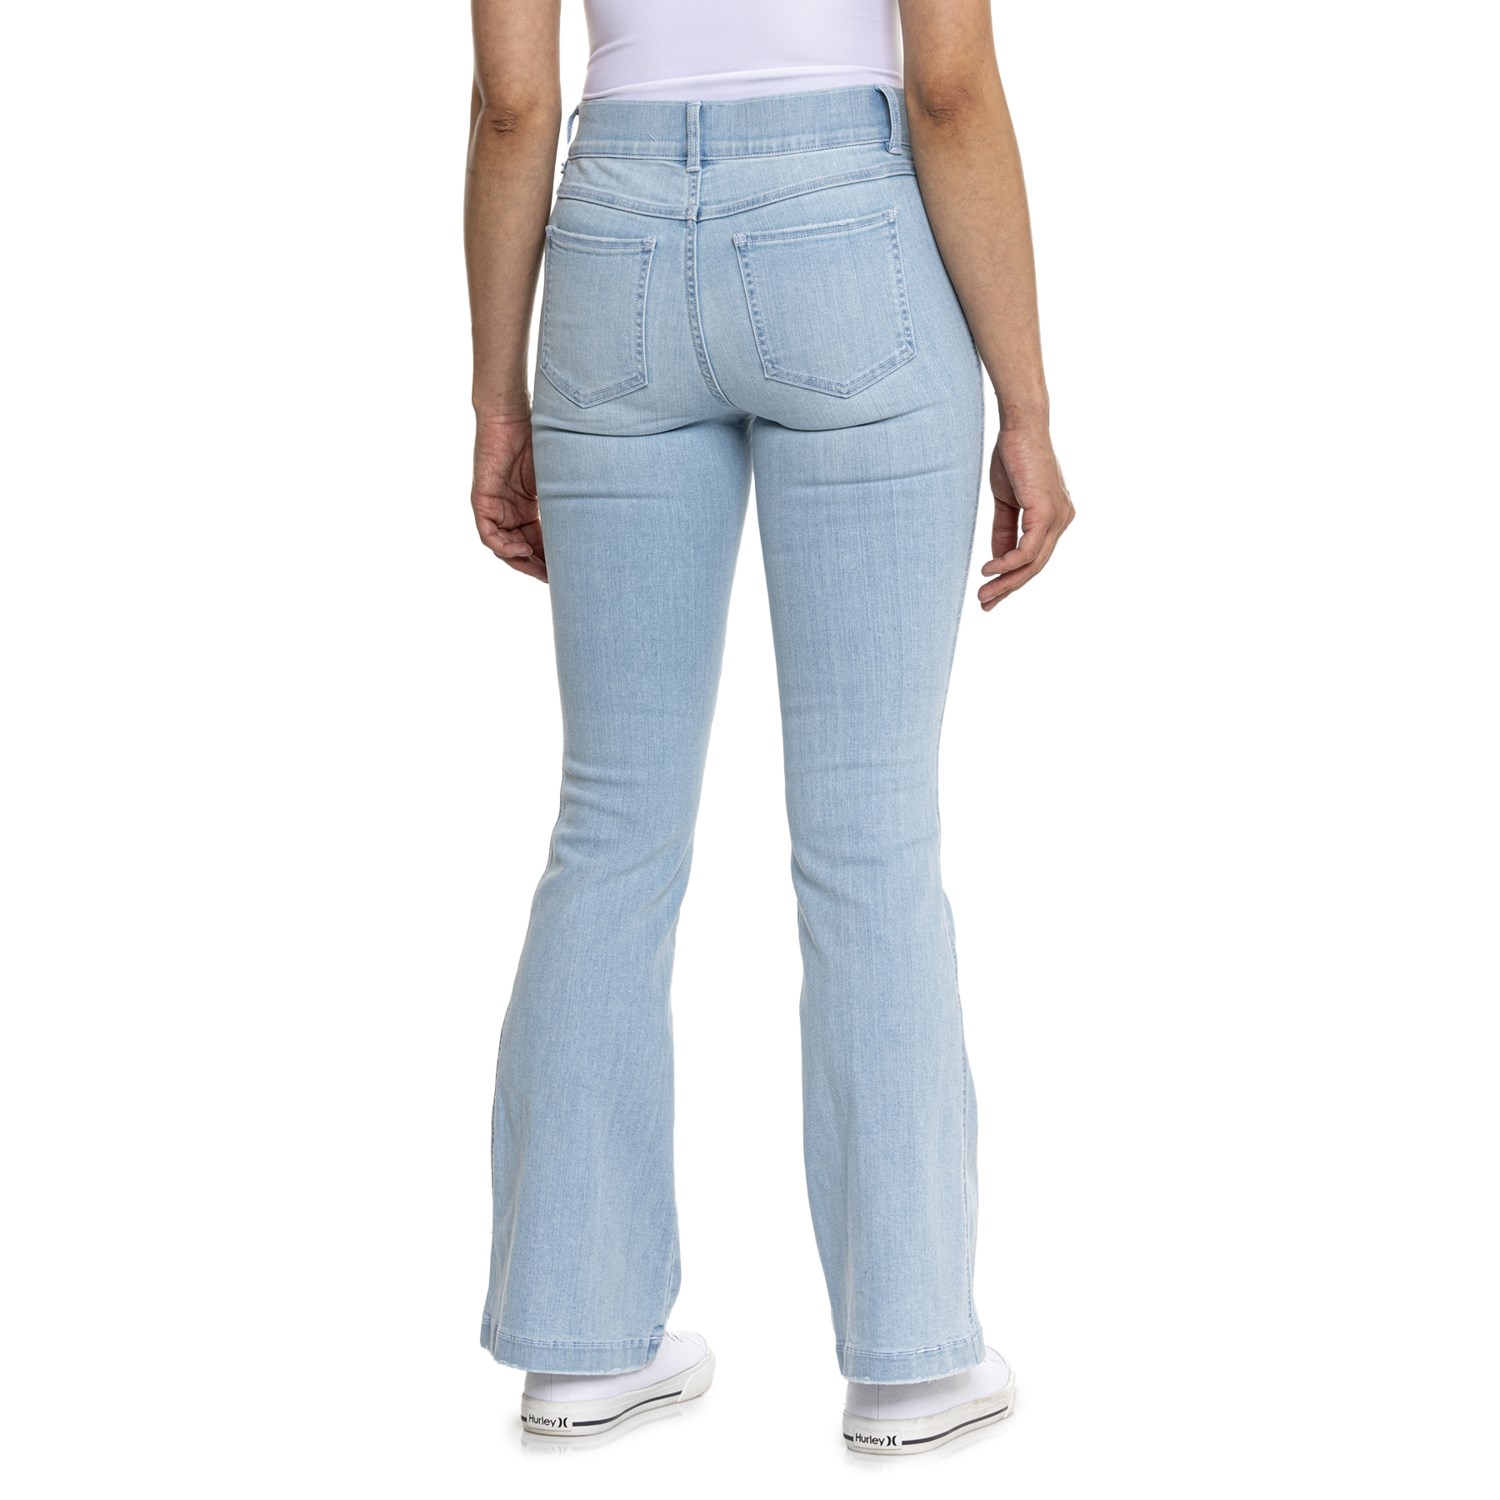 Athleta Blue Active Pants Size XS (Petite) - 59% off